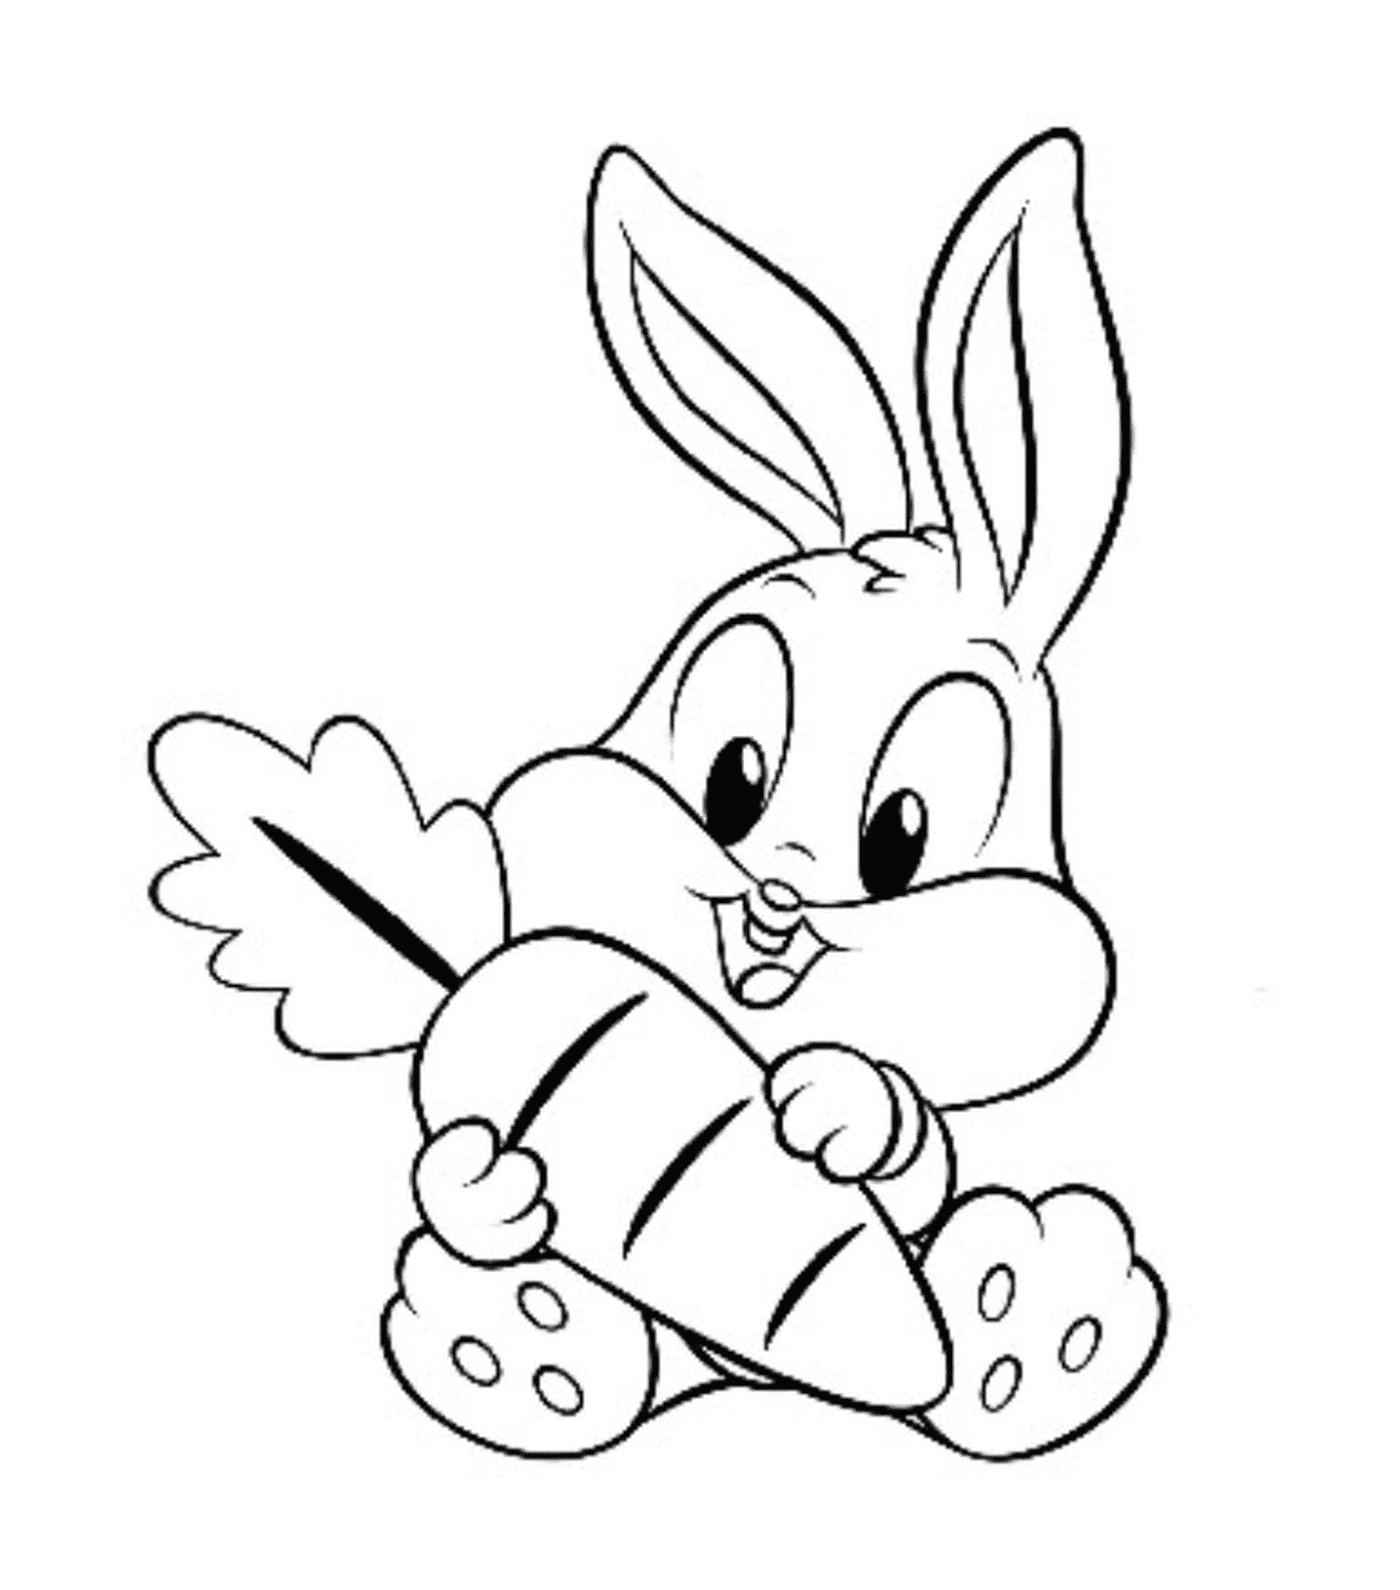  एक खरगोश अपने मुंह में एक बड़ा काररोच पकड़े 